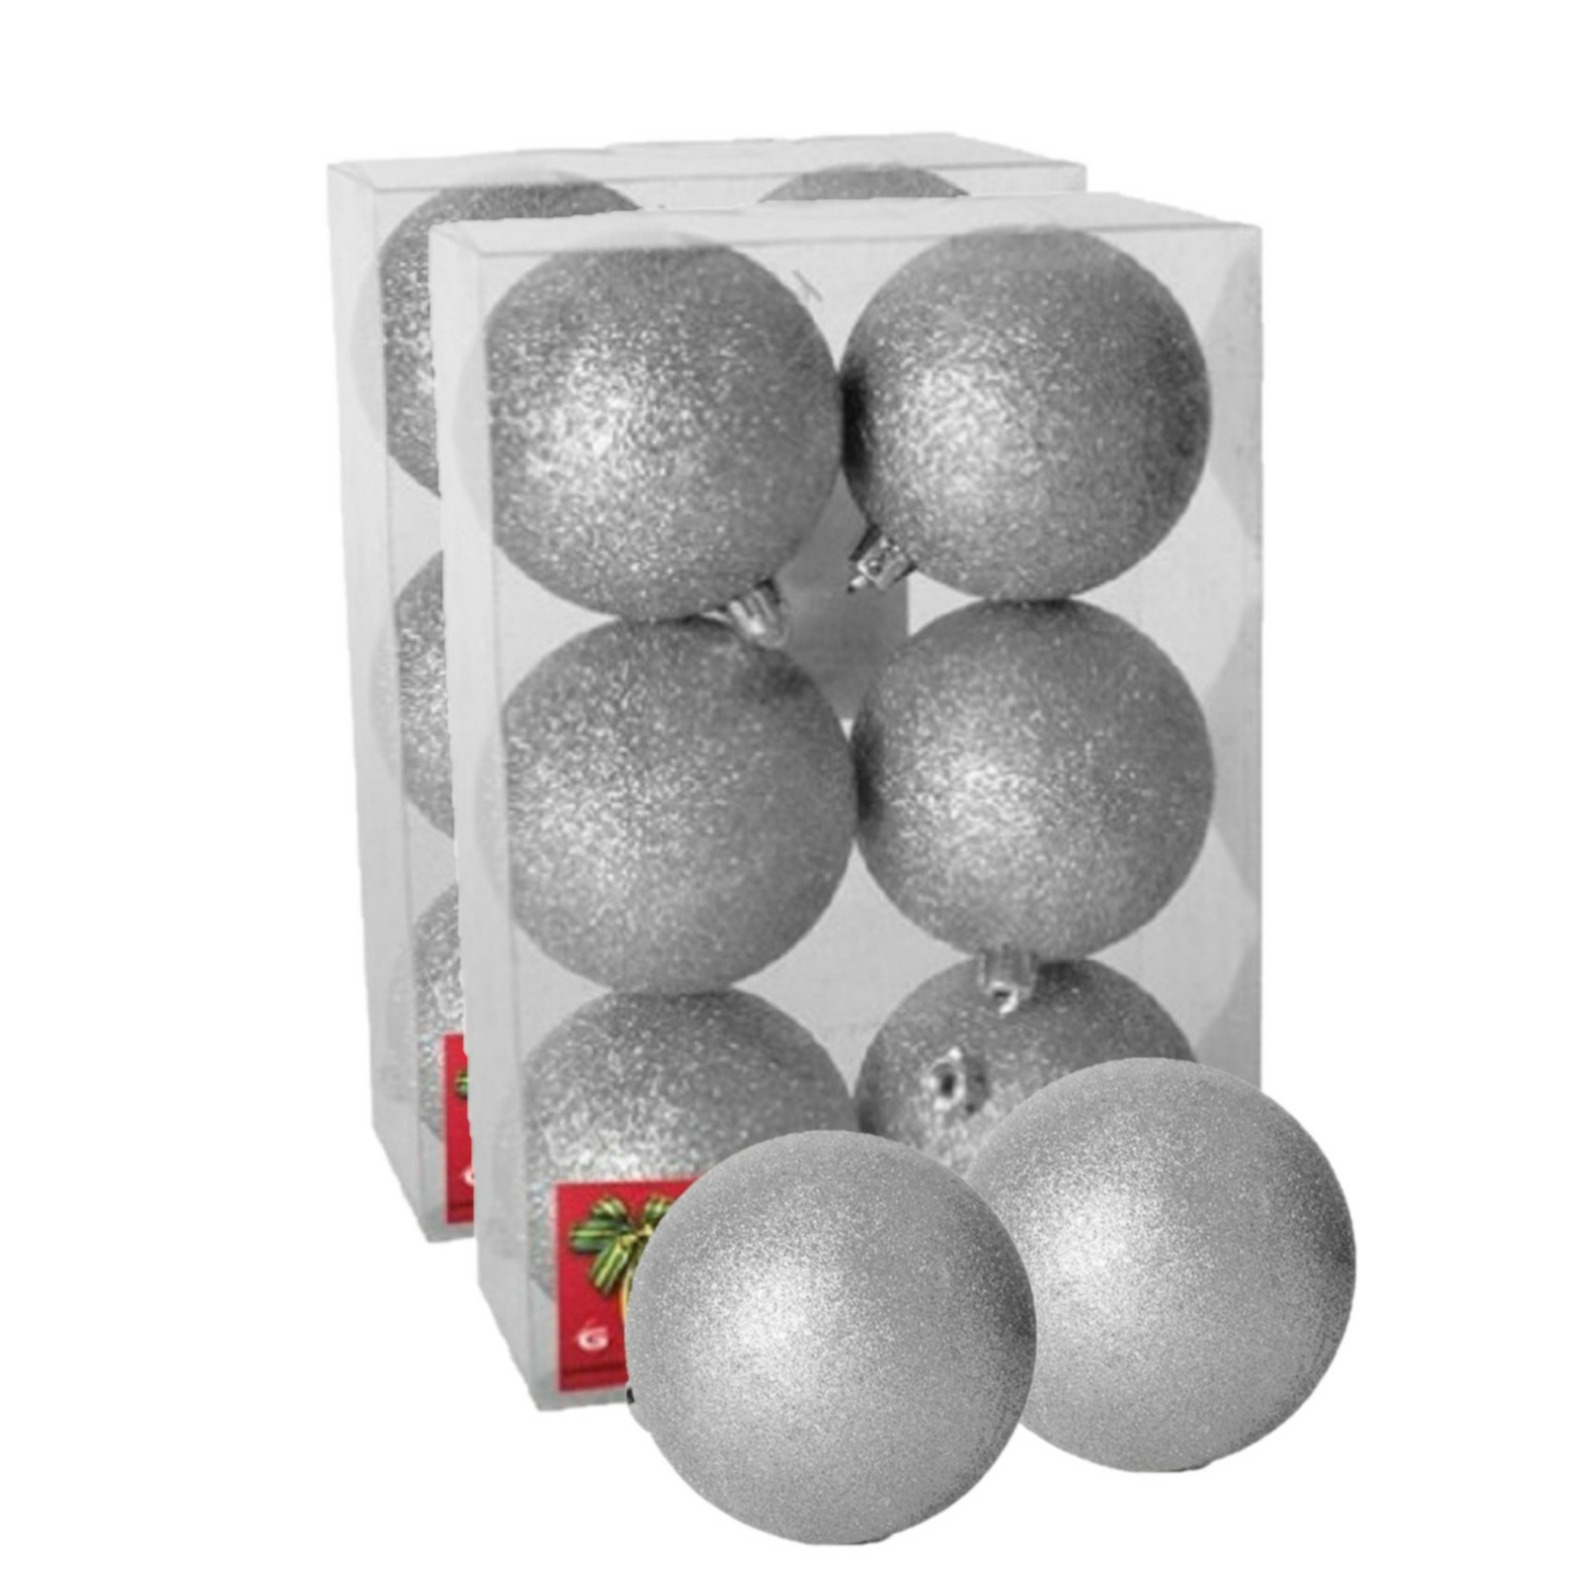 12x stuks kerstballen zilver glitters kunststof 4 cm